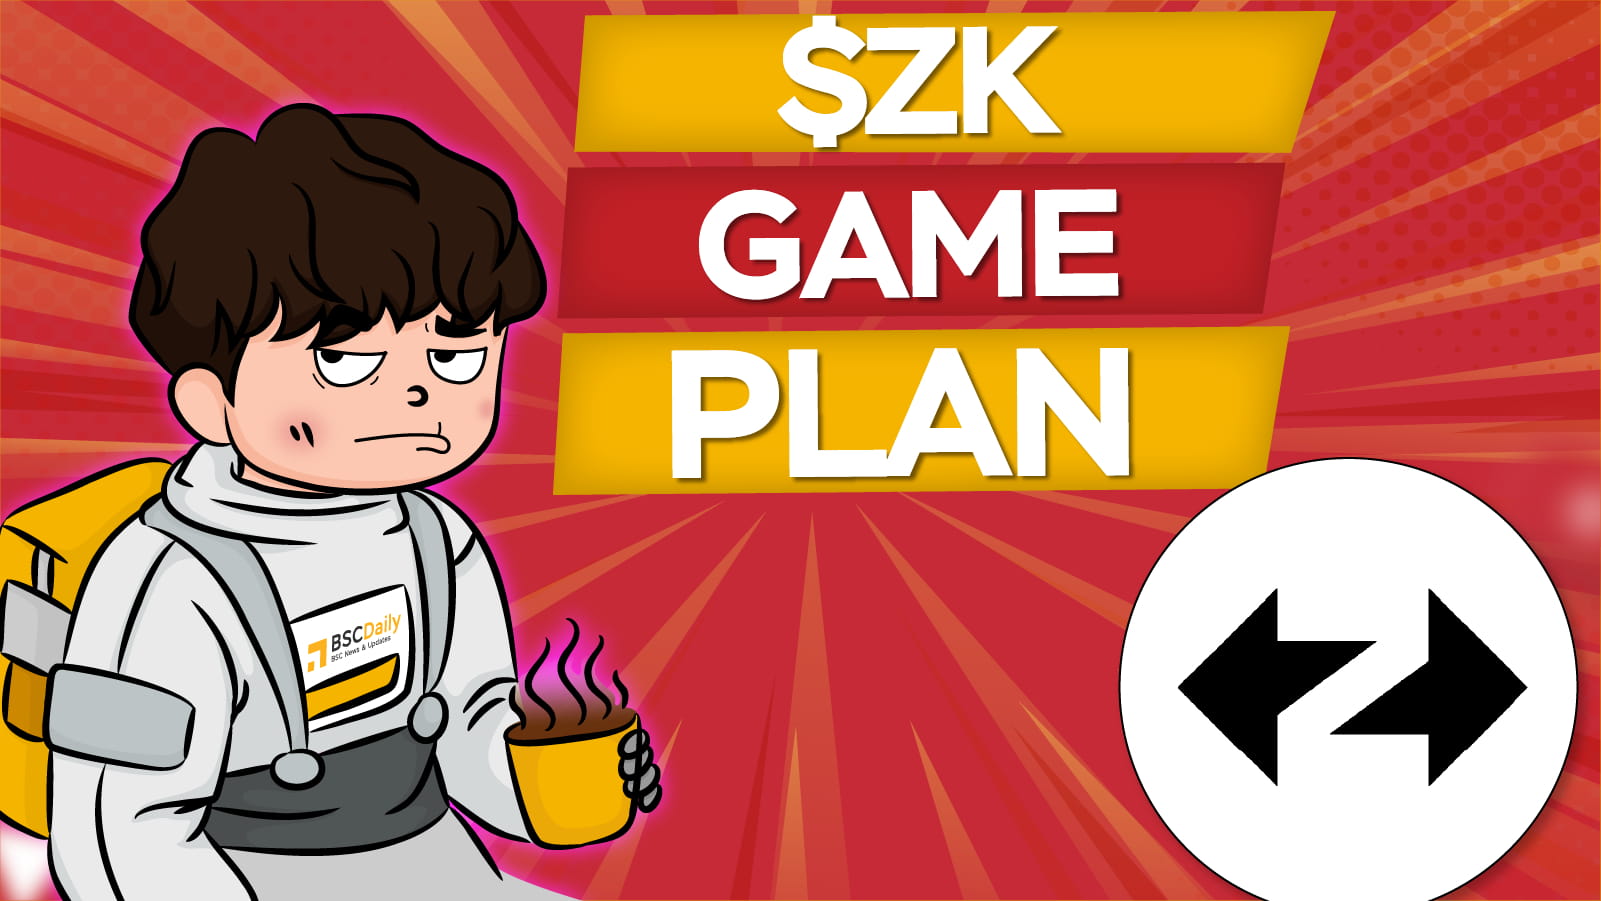 "$ZK" GAME PLAN